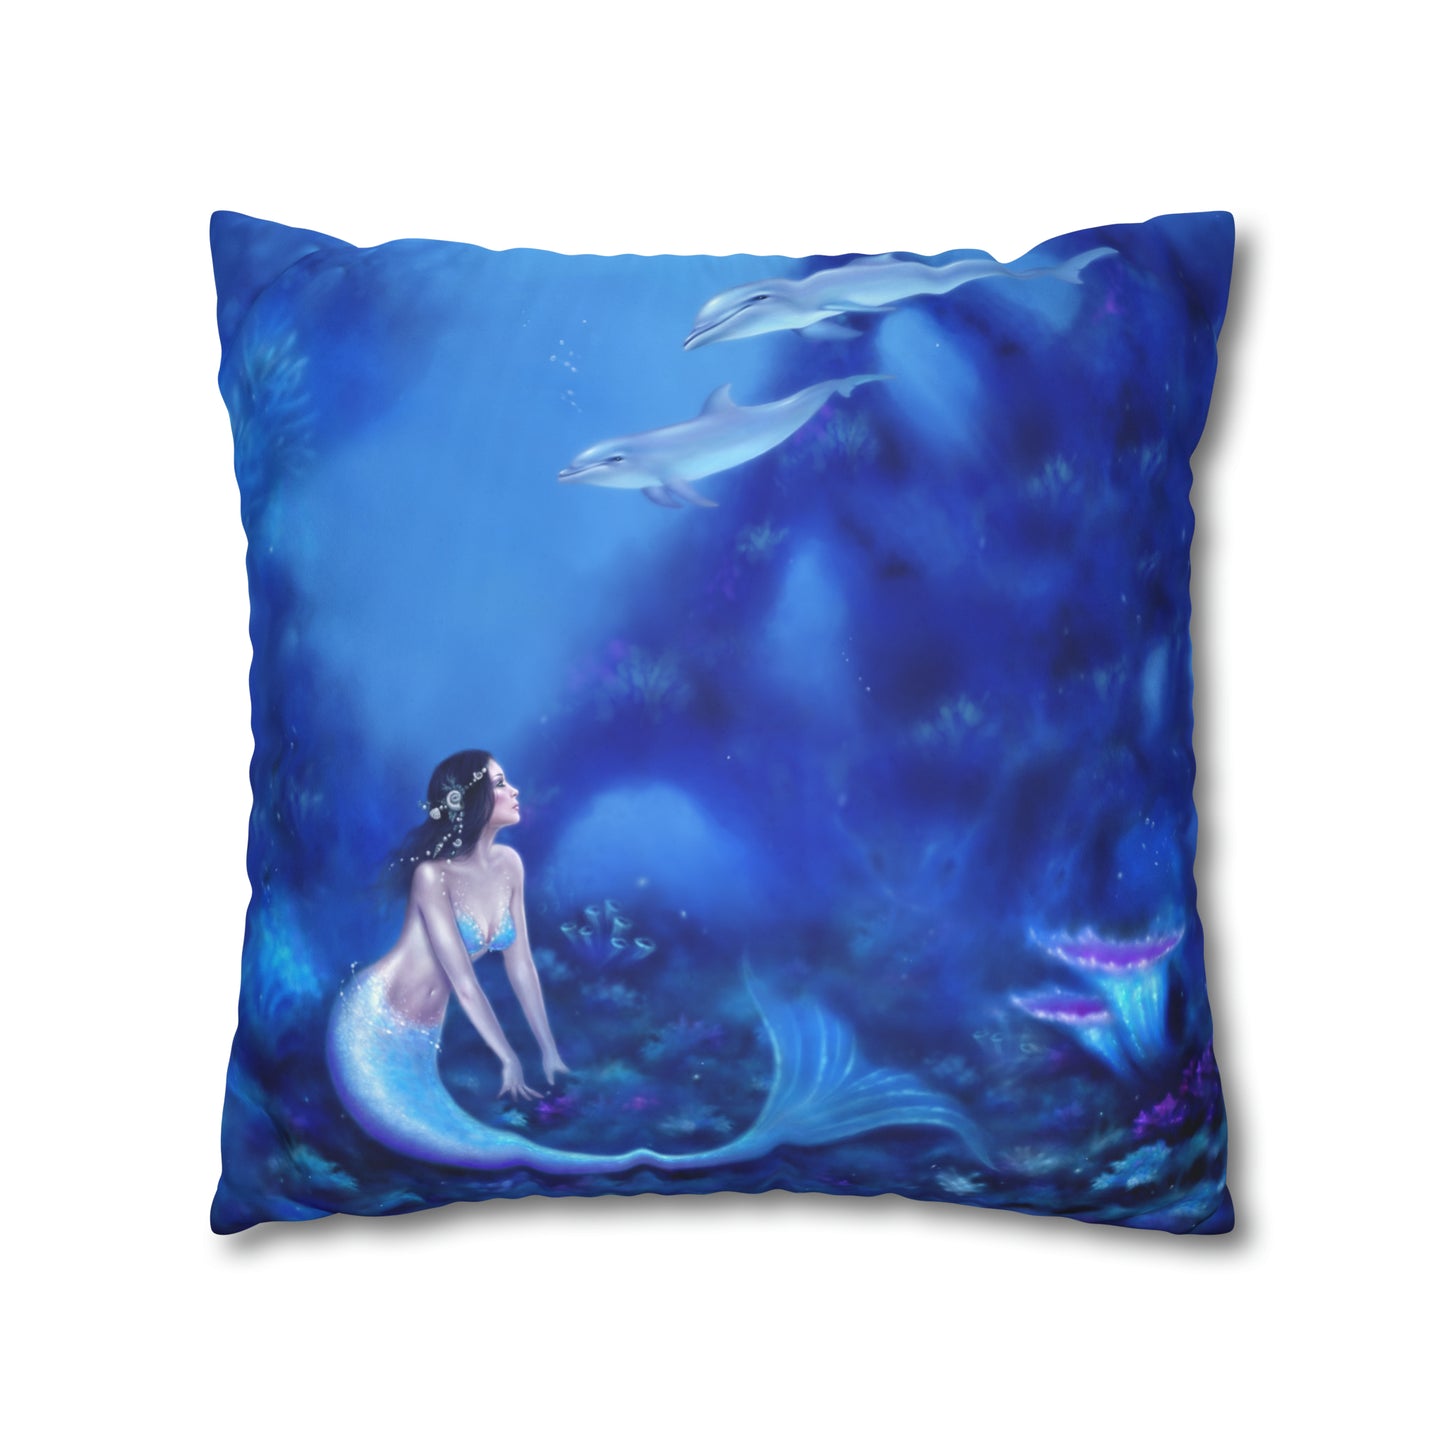 Throw Pillow Cover - Ultramarine